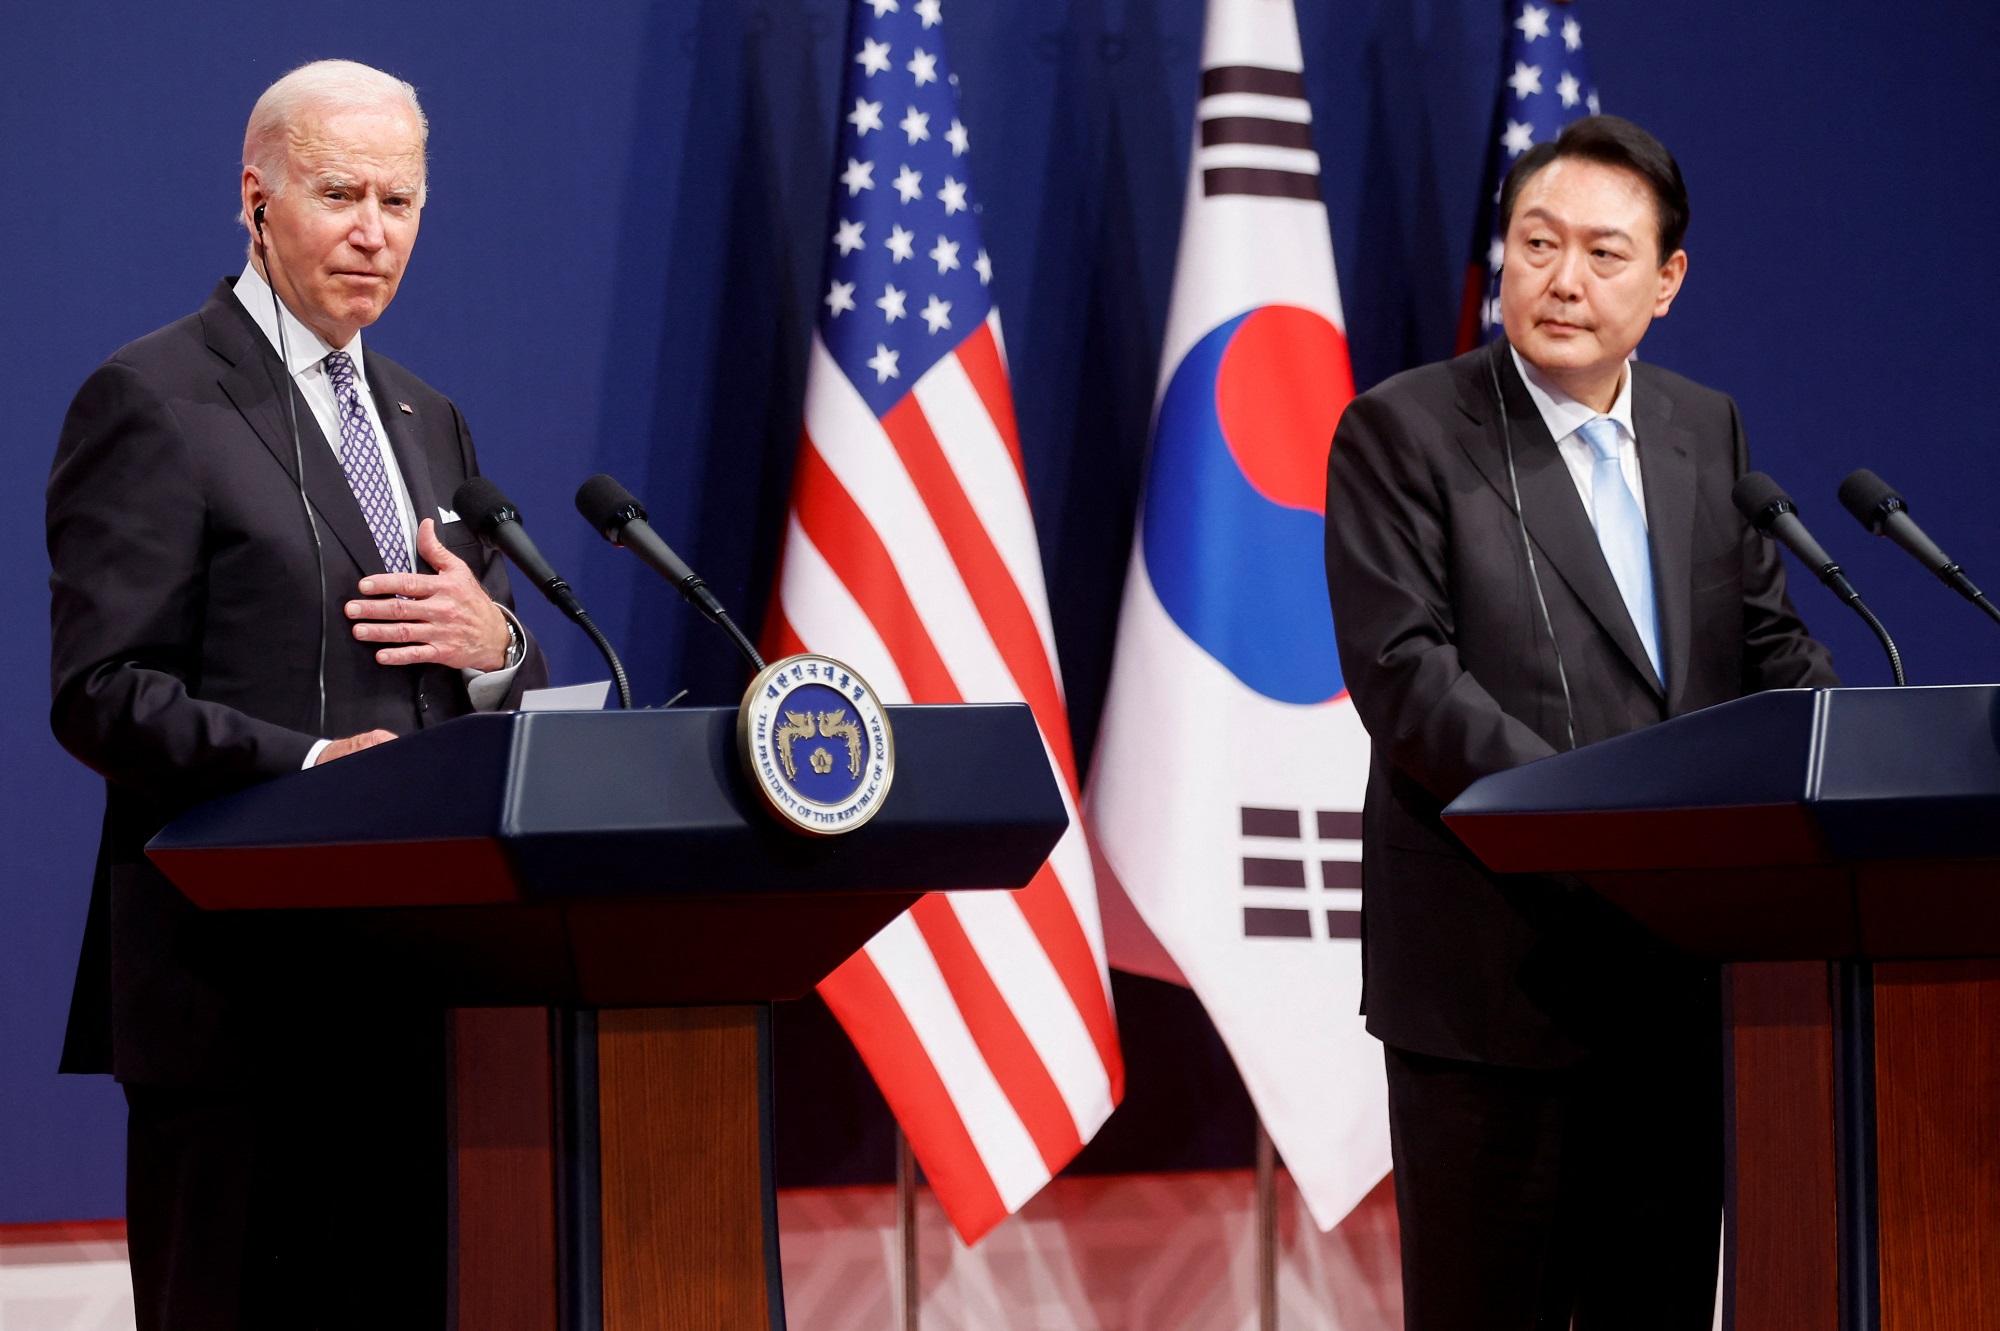 Tổng thống Mỹ-Hàn Quốc: Đối với Mỹ và Hàn Quốc, mối quan hệ này luôn được coi là đặc biệt và quần thể. Và vào năm 2024, quan hệ này đã lên đến một cấp độ mới với sự xuất hiện của tổng thống Mỹ - Hàn Quốc. Cuộc gặp gỡ giữa hai nhà lãnh đạo này đã mang lại nhiều điều tích cực cho cả hai nước. Hãy cùng chiêm ngưỡng hình ảnh và hiểu thêm về quan hệ đối tác đầy tiềm năng này.